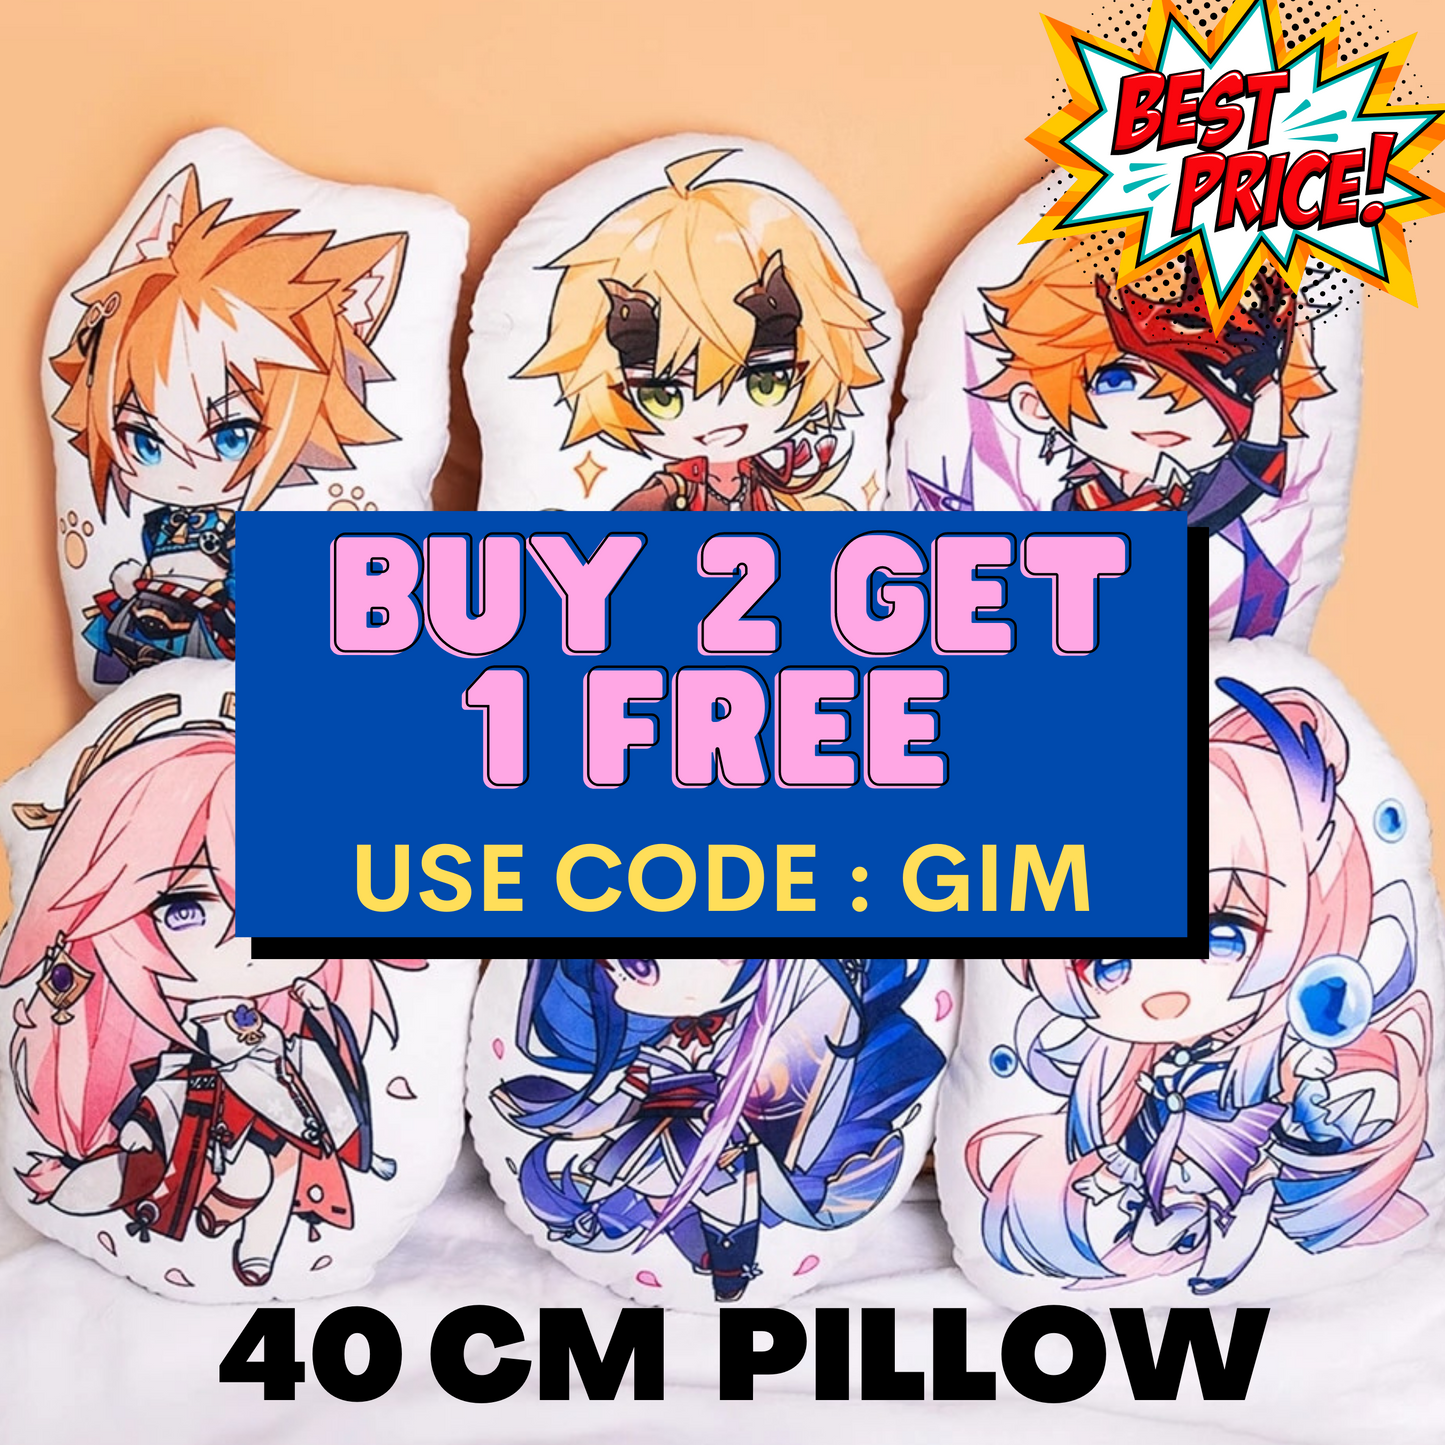 Genshin Impact stuffed pillow (40 cm) | Zhongli,Tartaglia, Xiao, Diluc Cosplay Anime Plush Toys Kawaii Cartoon Pillow